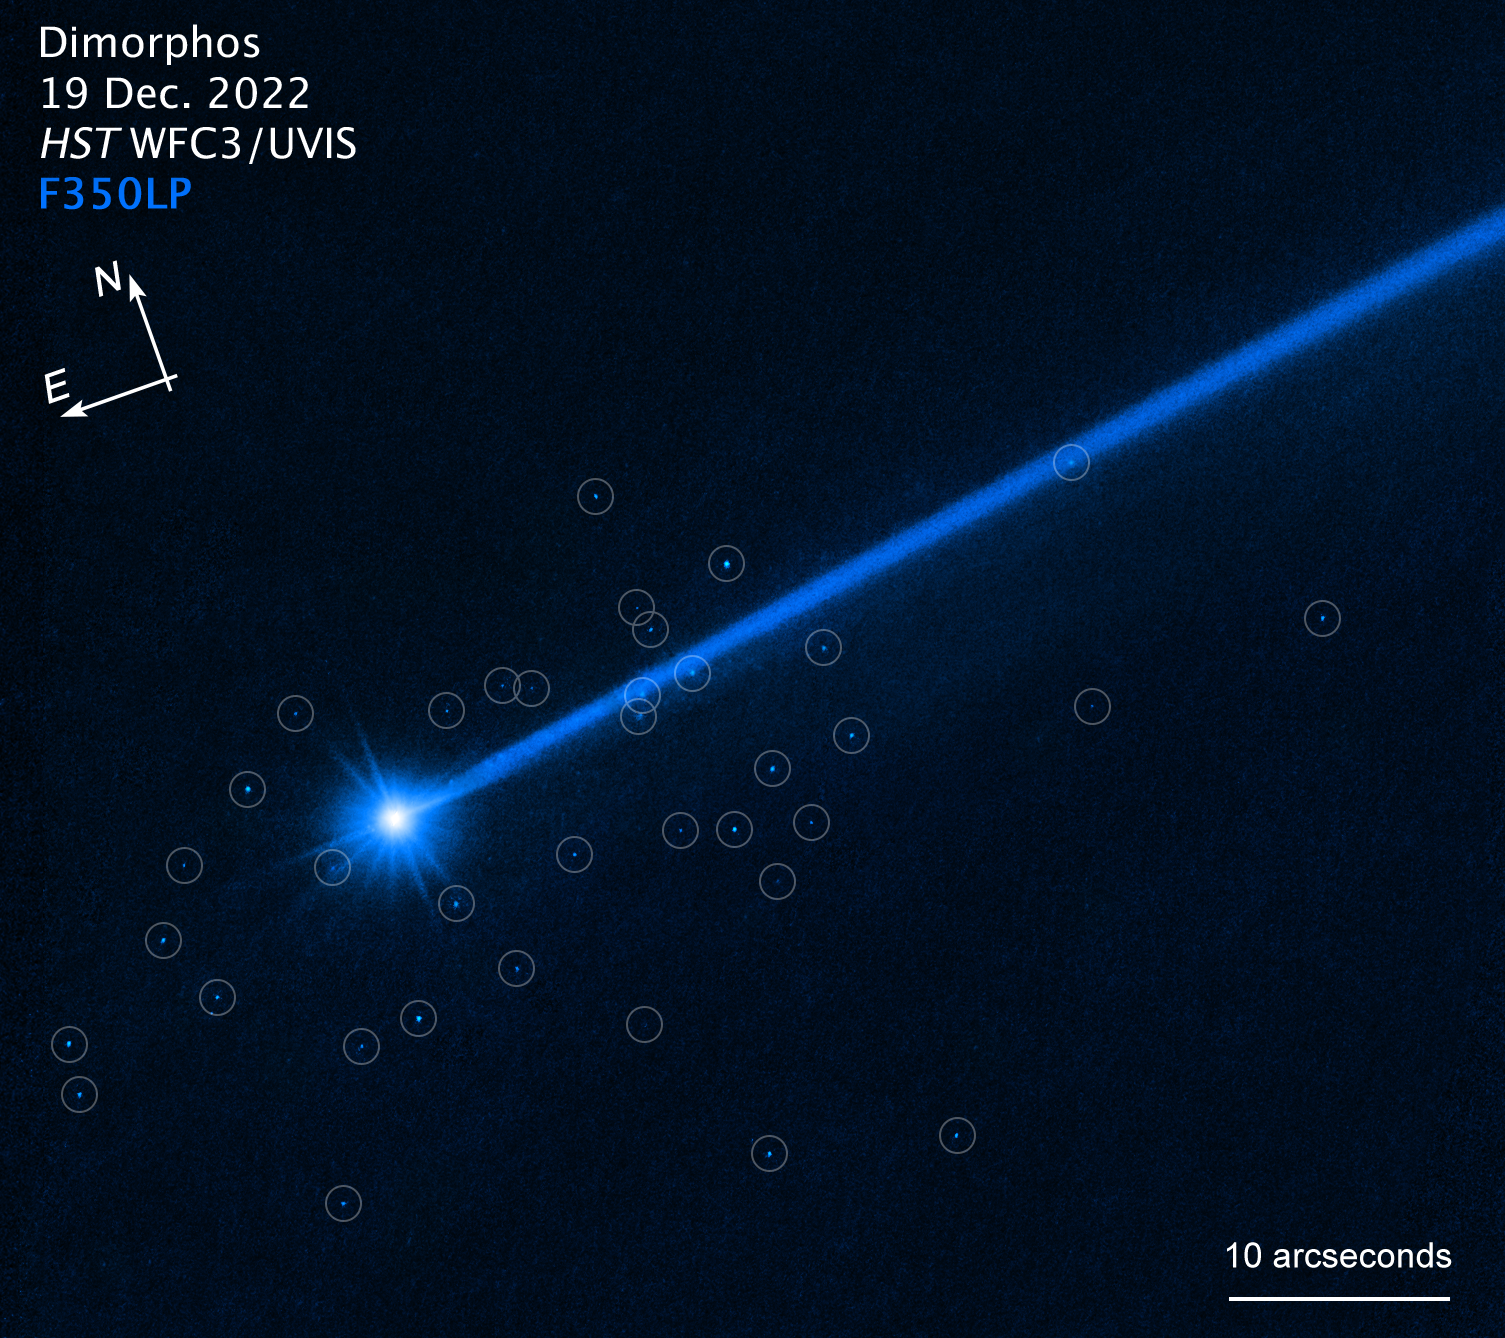 Ярко-синий астероид с длинным хвостом, направляющийся в правый верхний угол.  Вокруг астероида окружают маленькие синие валуны.